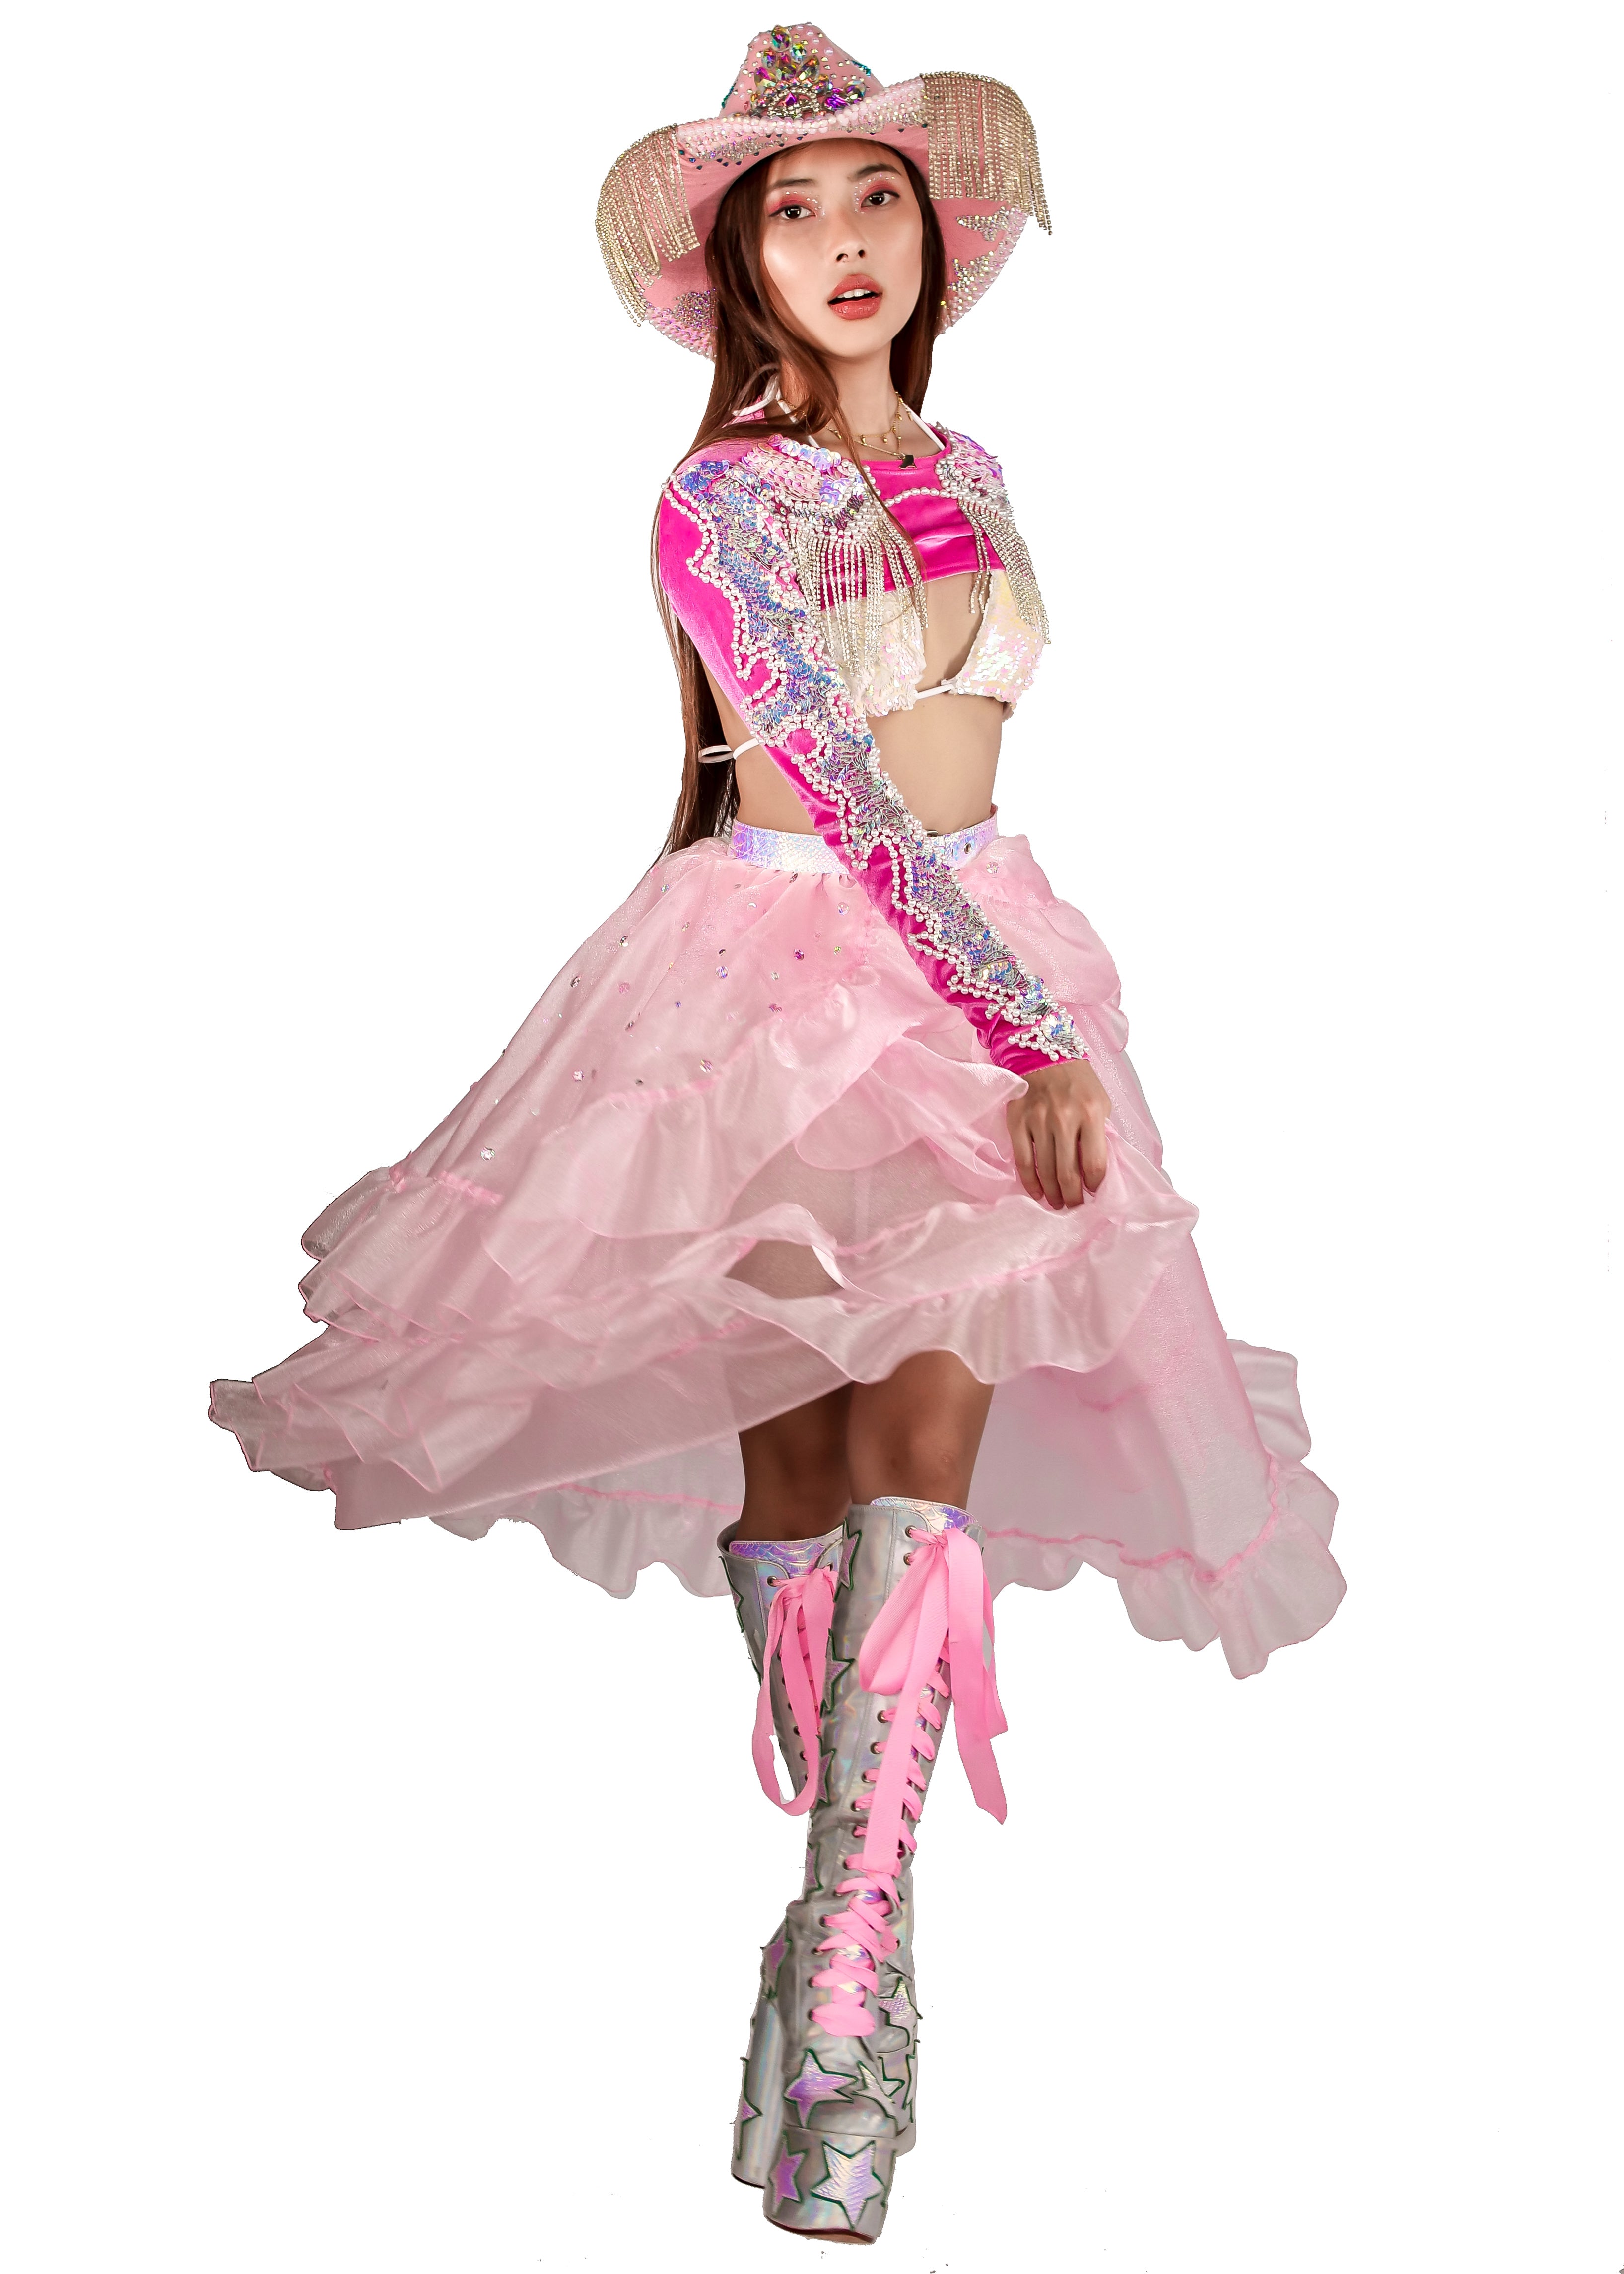 The Desert Princess Pink Overskirt